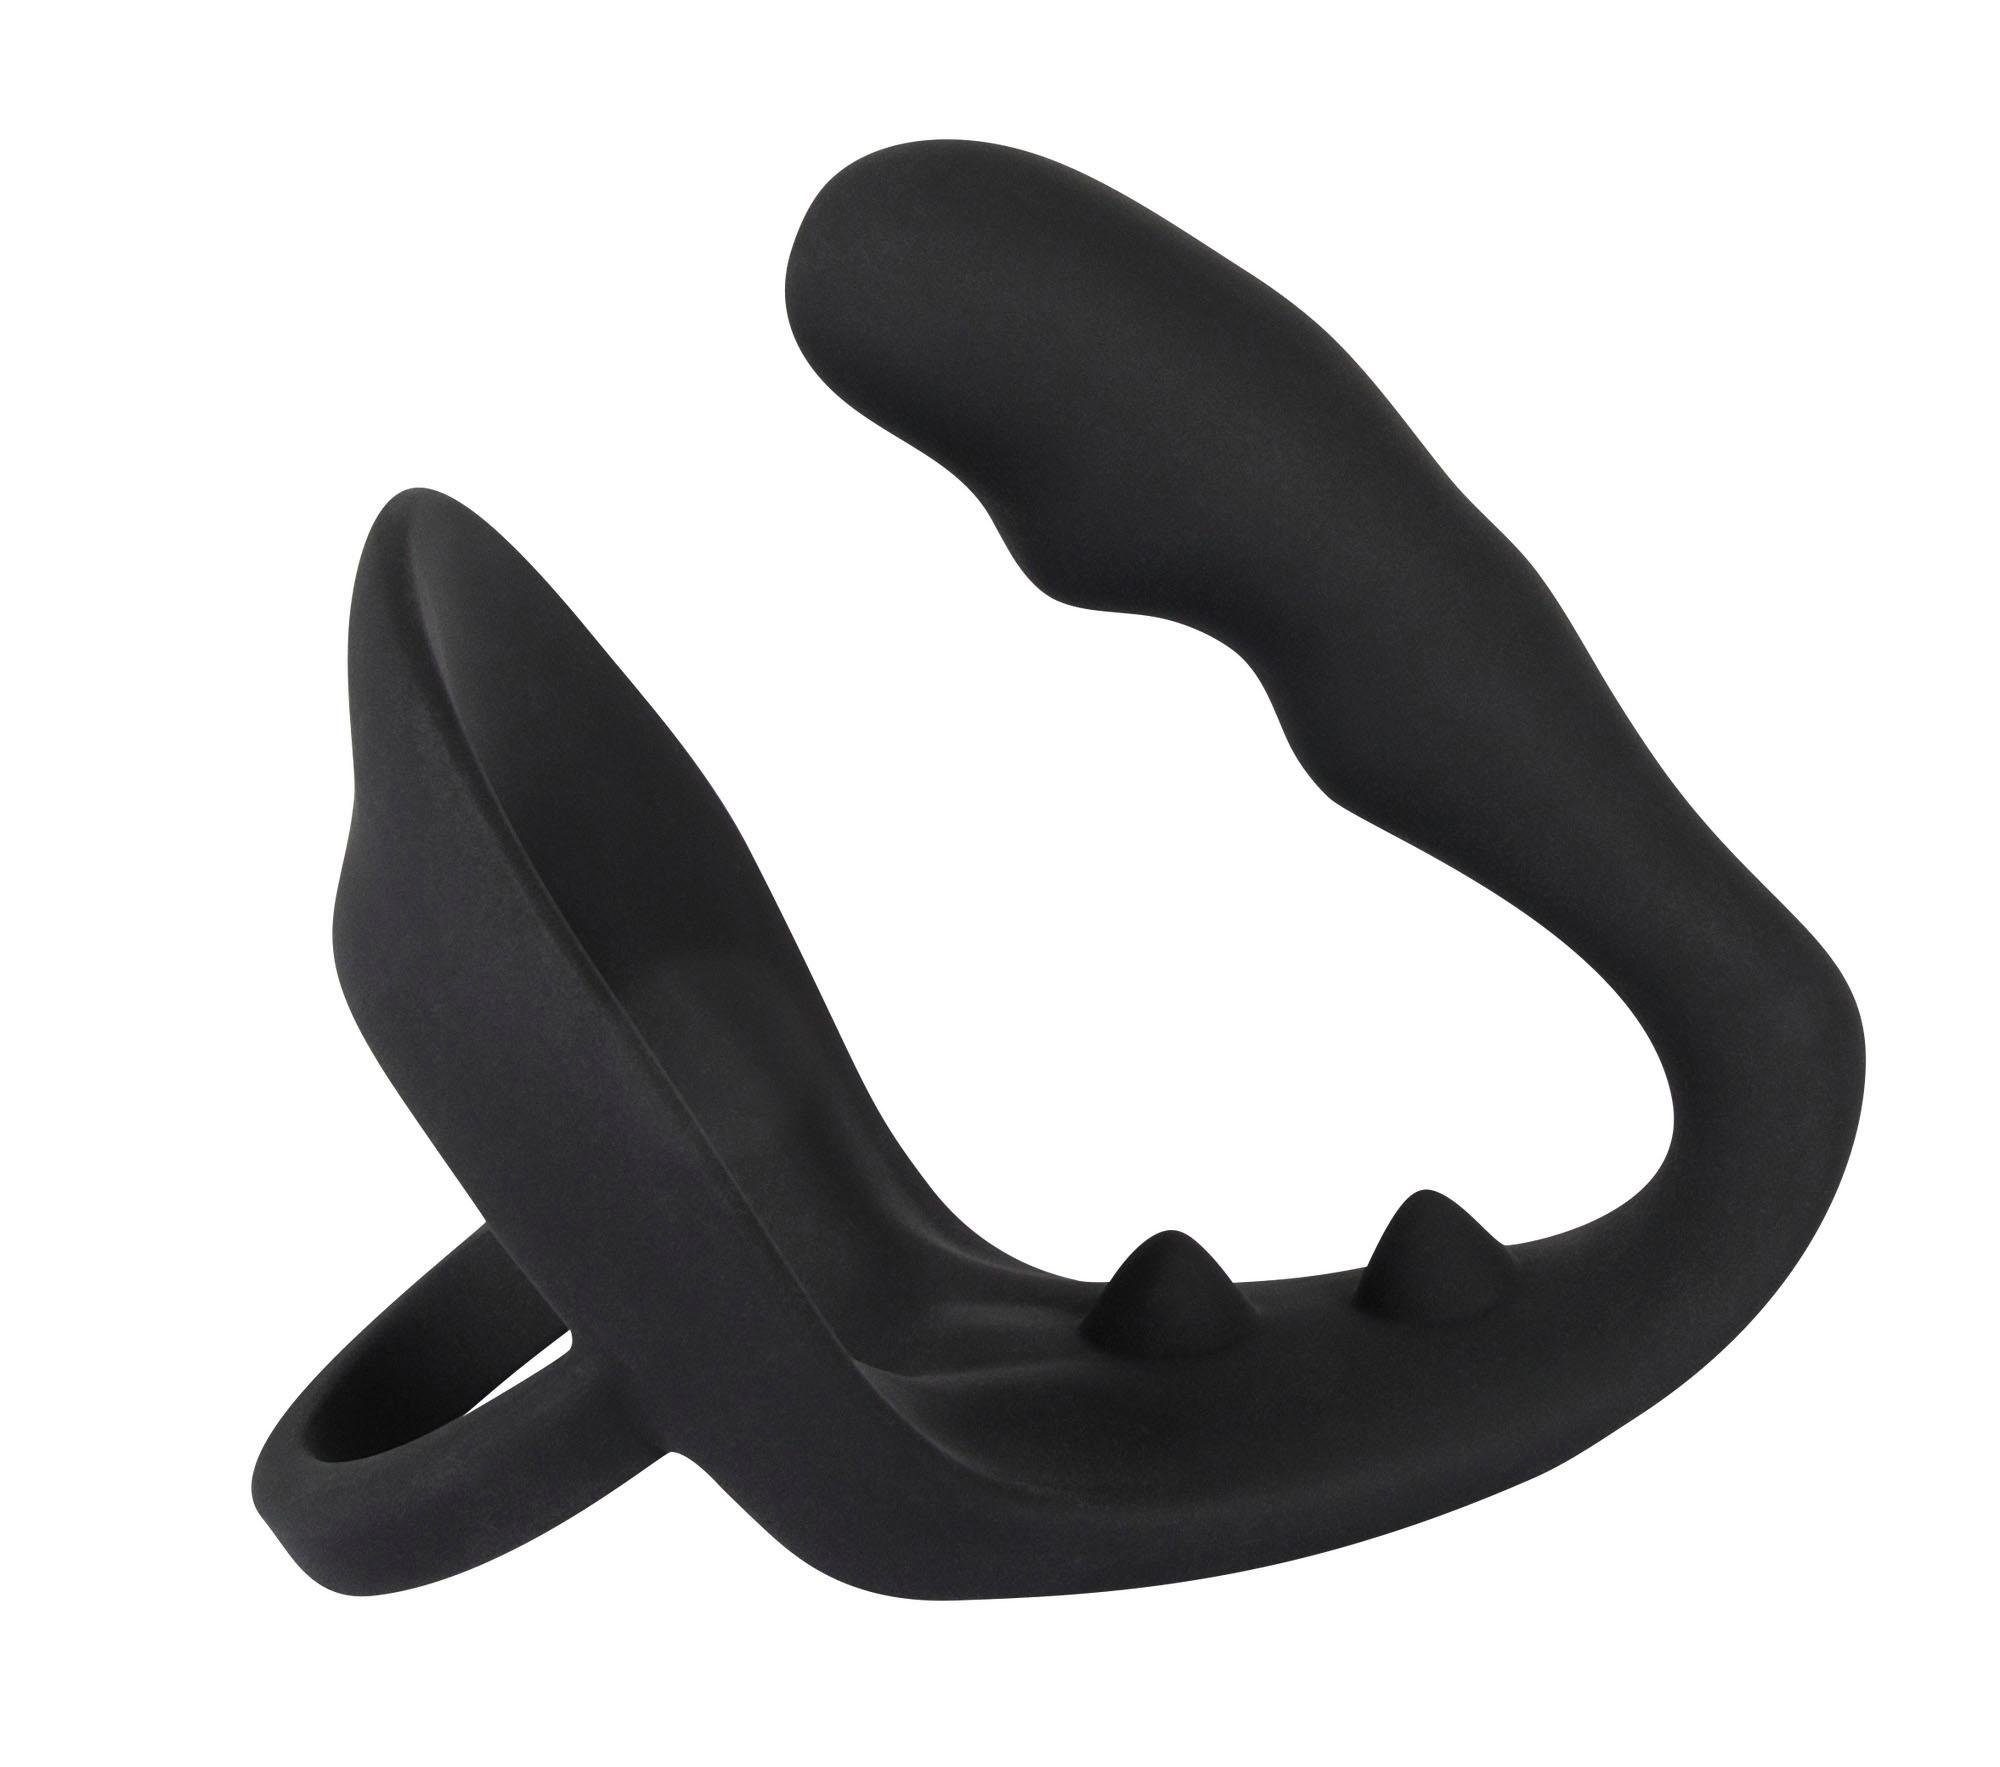 Ring BLACK & VELVETS mit SEX-TOYS Penisring zusätzlichem Plug, Analplug